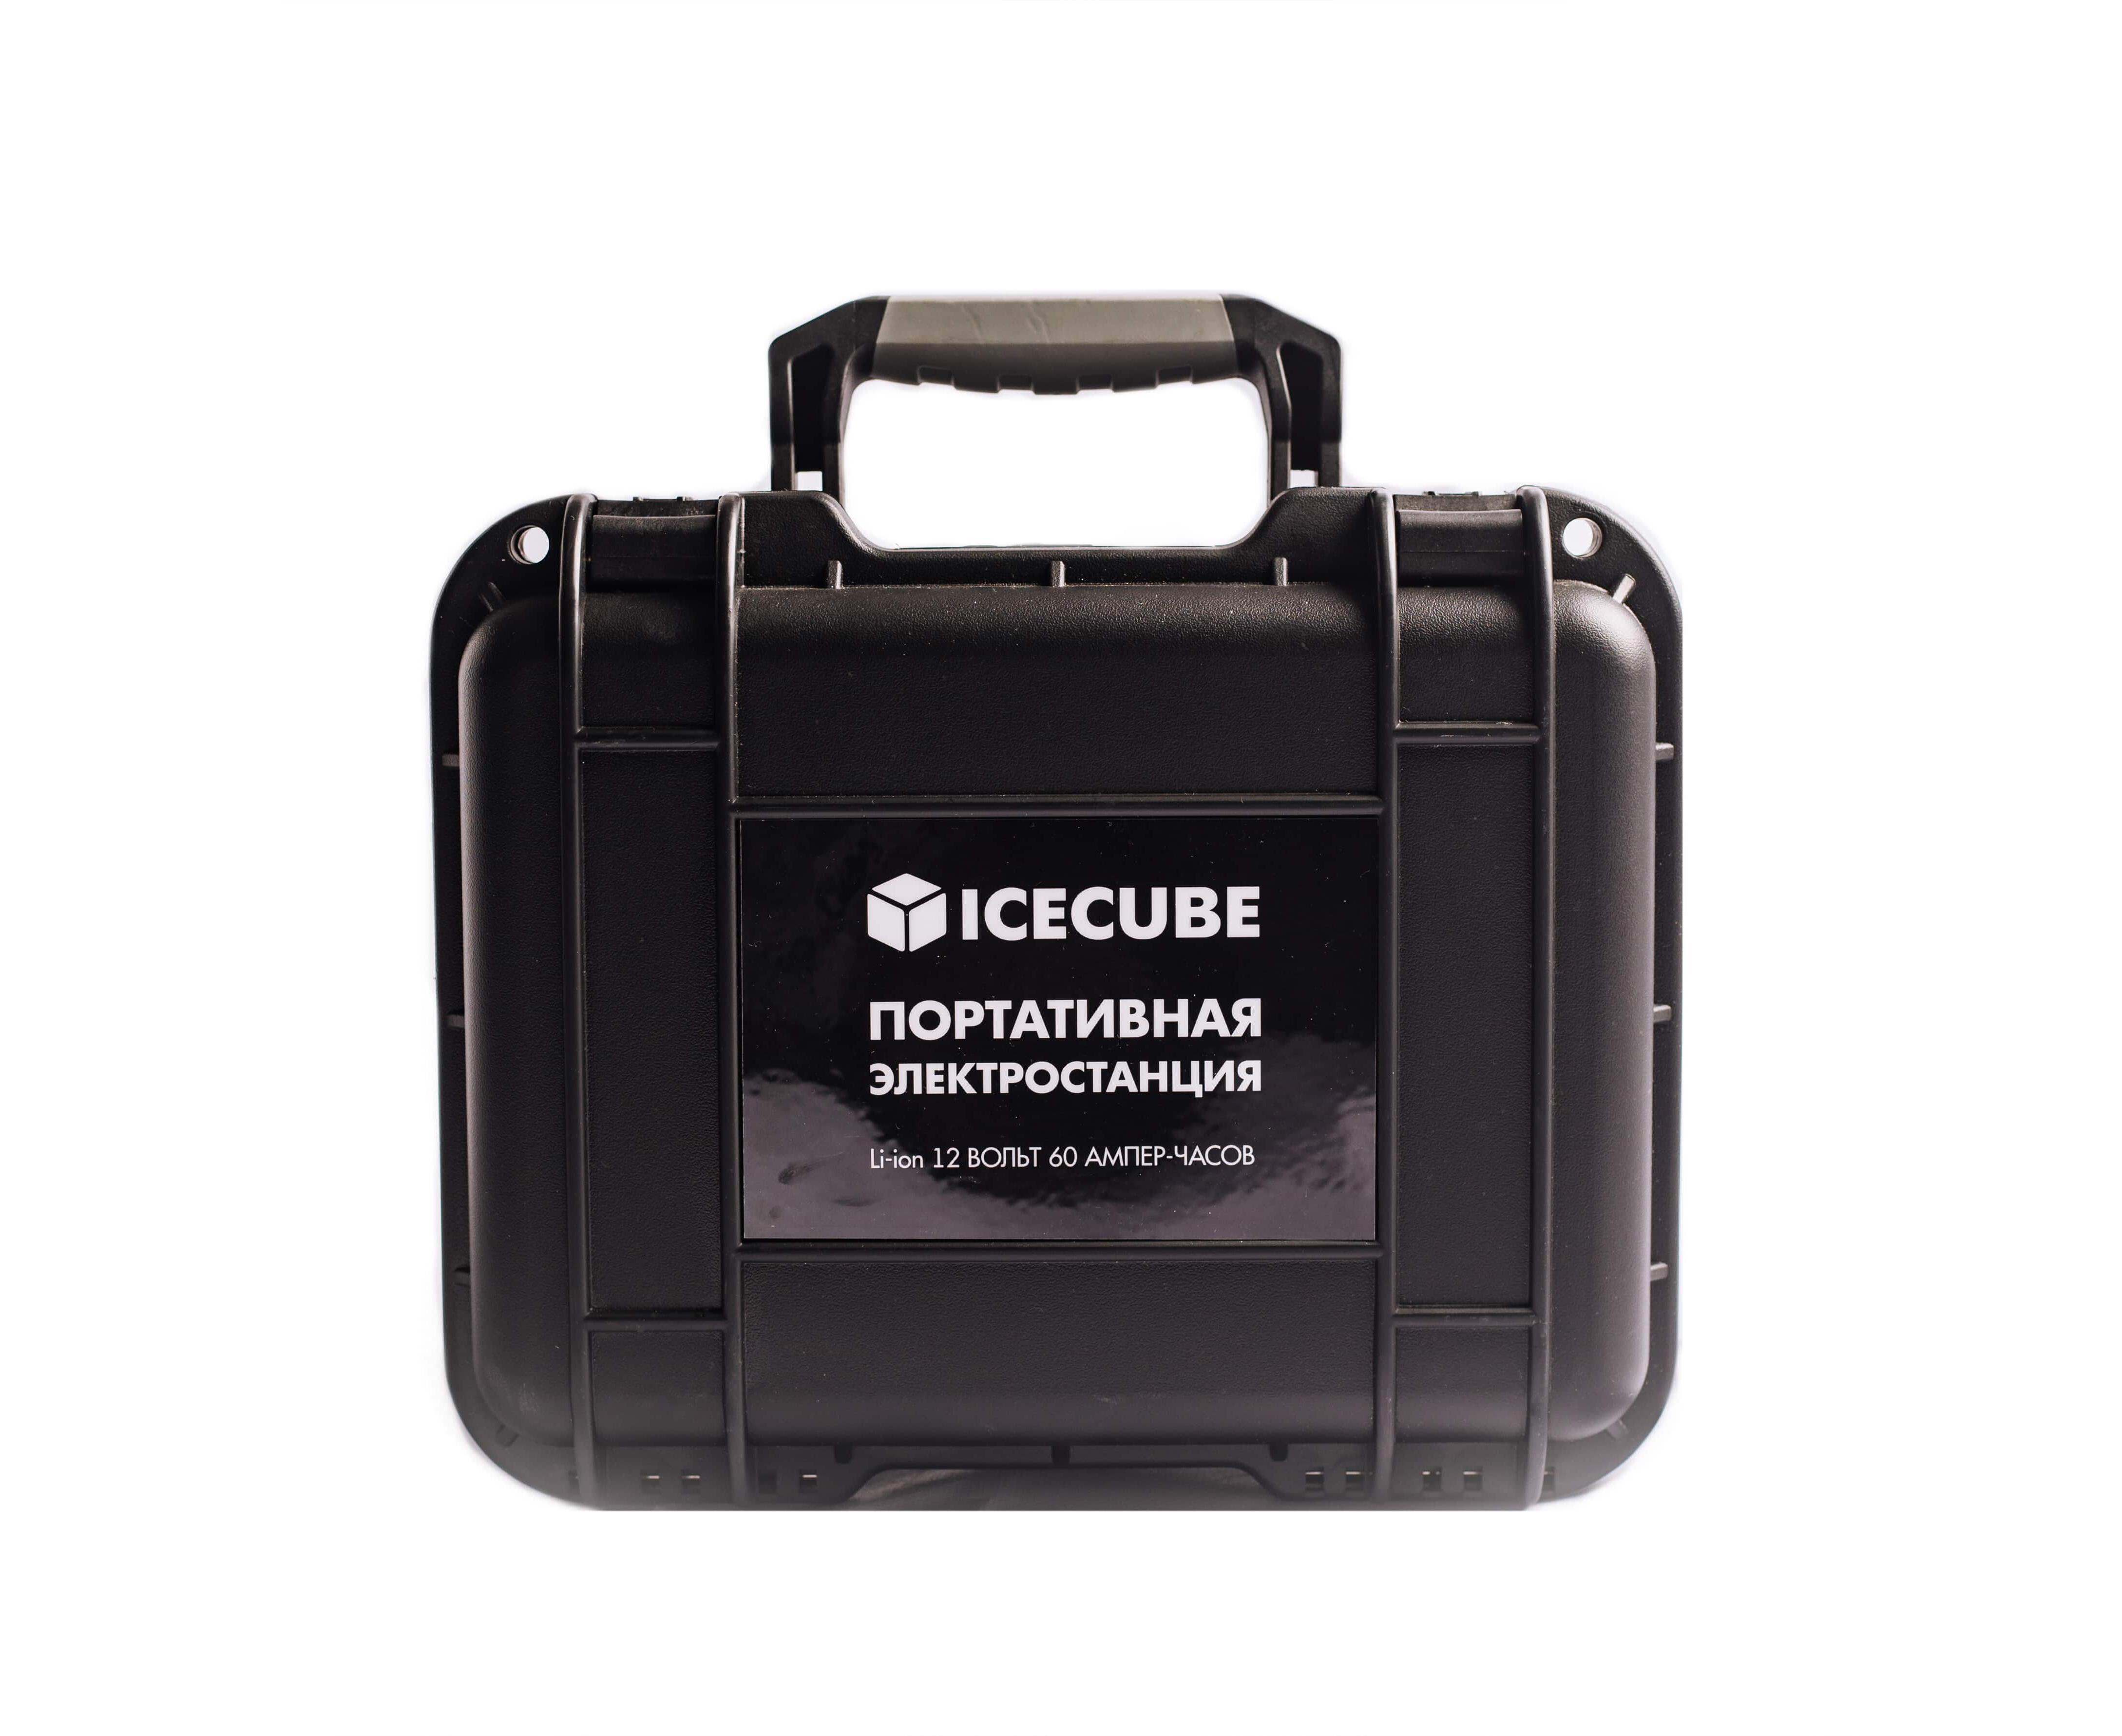 Батарея для кемпинга. Аккумулятор для кемпинга. Ice Cube портативная электростанция. Переносной аккумулятор для кемпинга. Es-60 (60 а-ч, 720 Вт-ч).